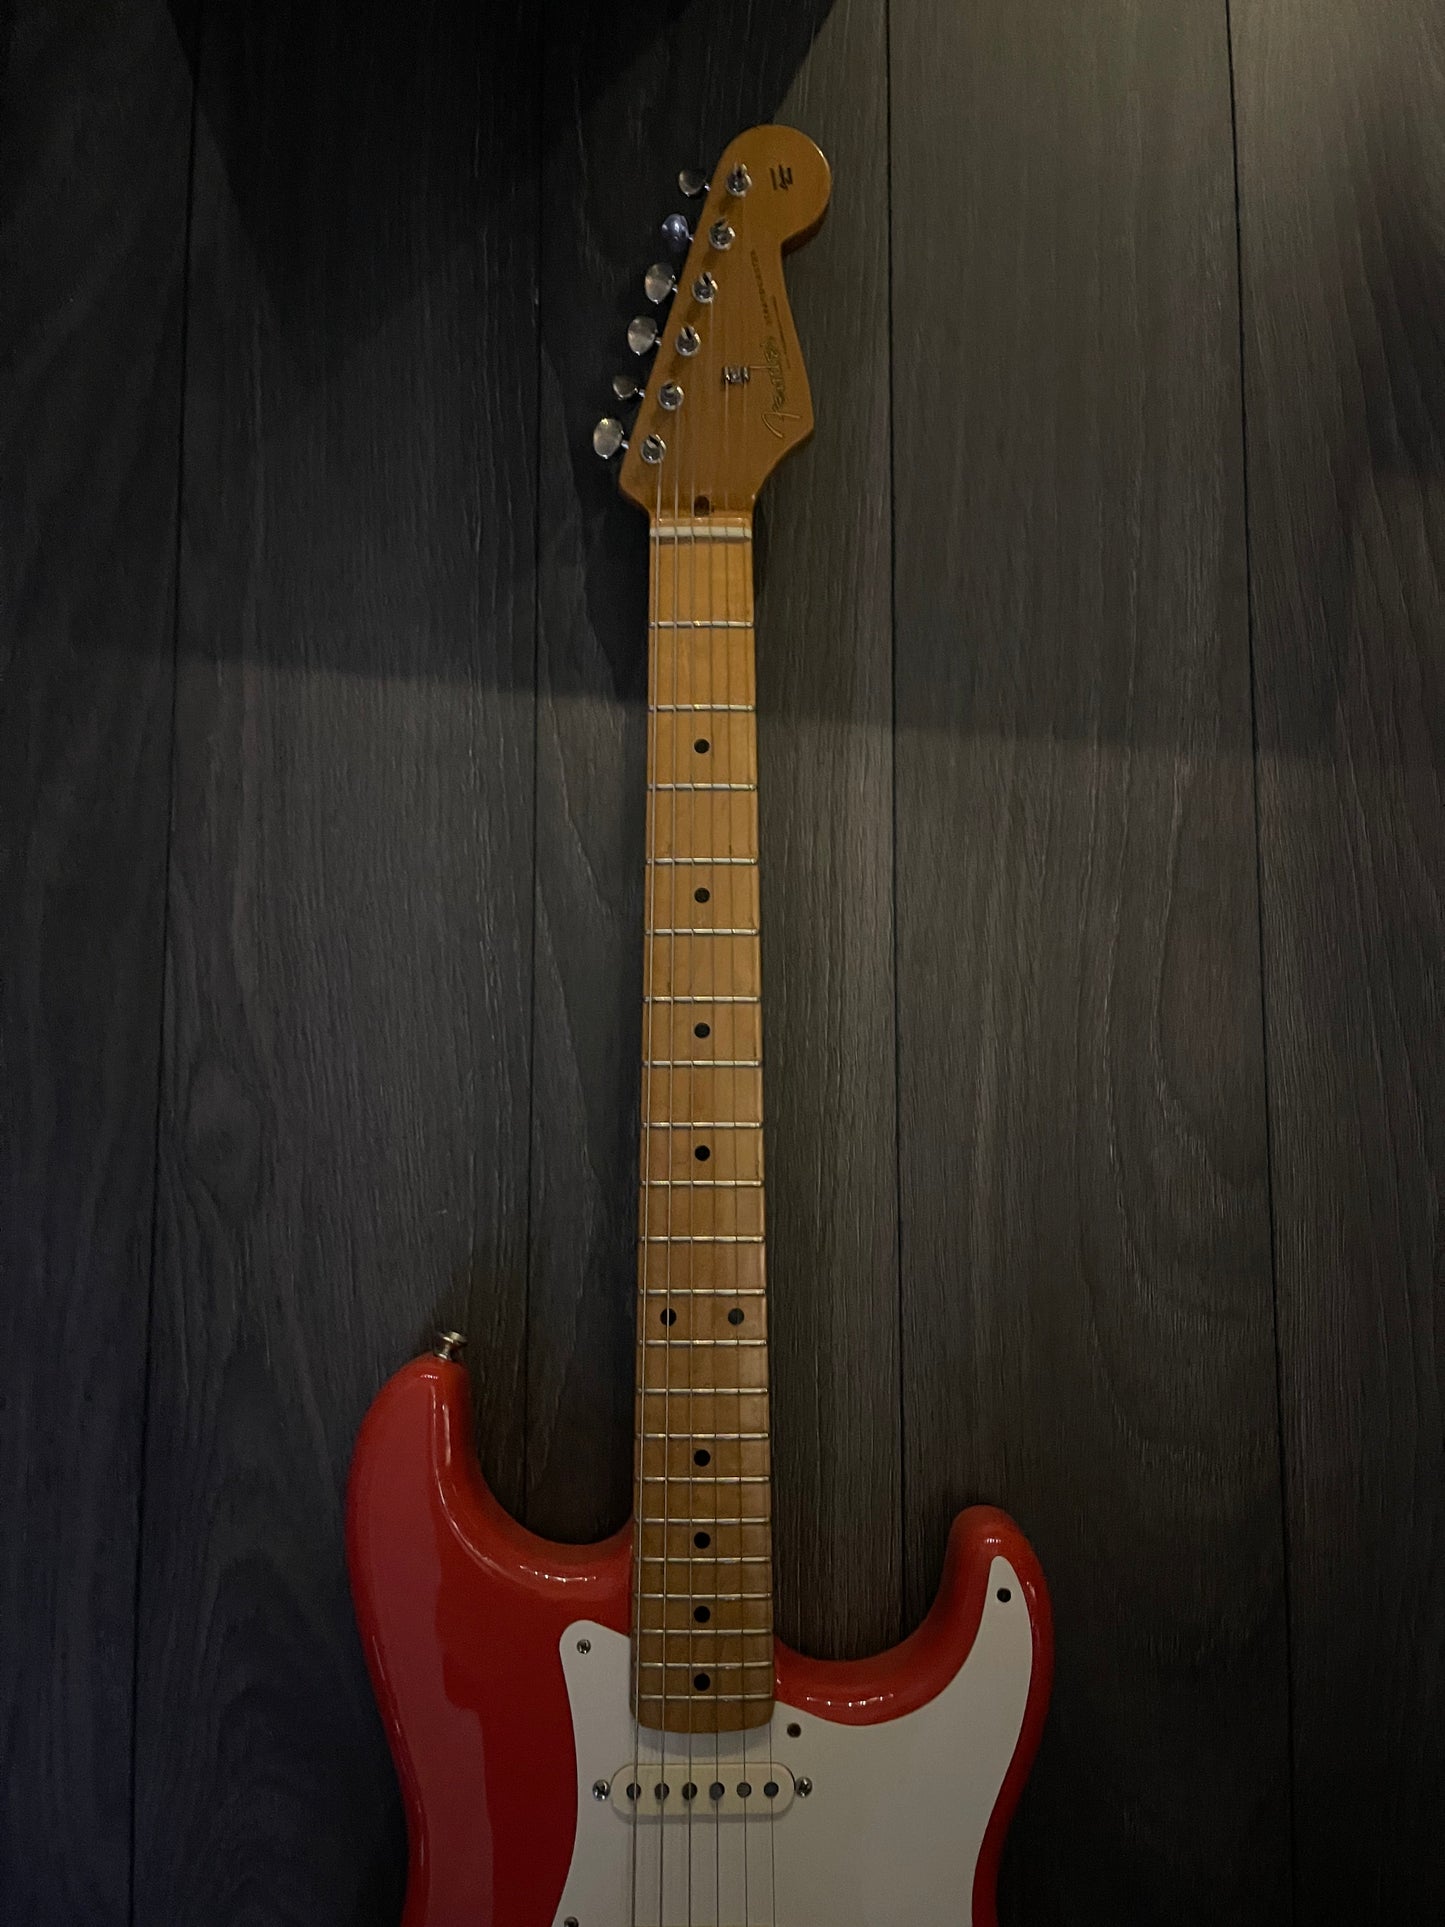 Fender 50's Strat Guitar 2008